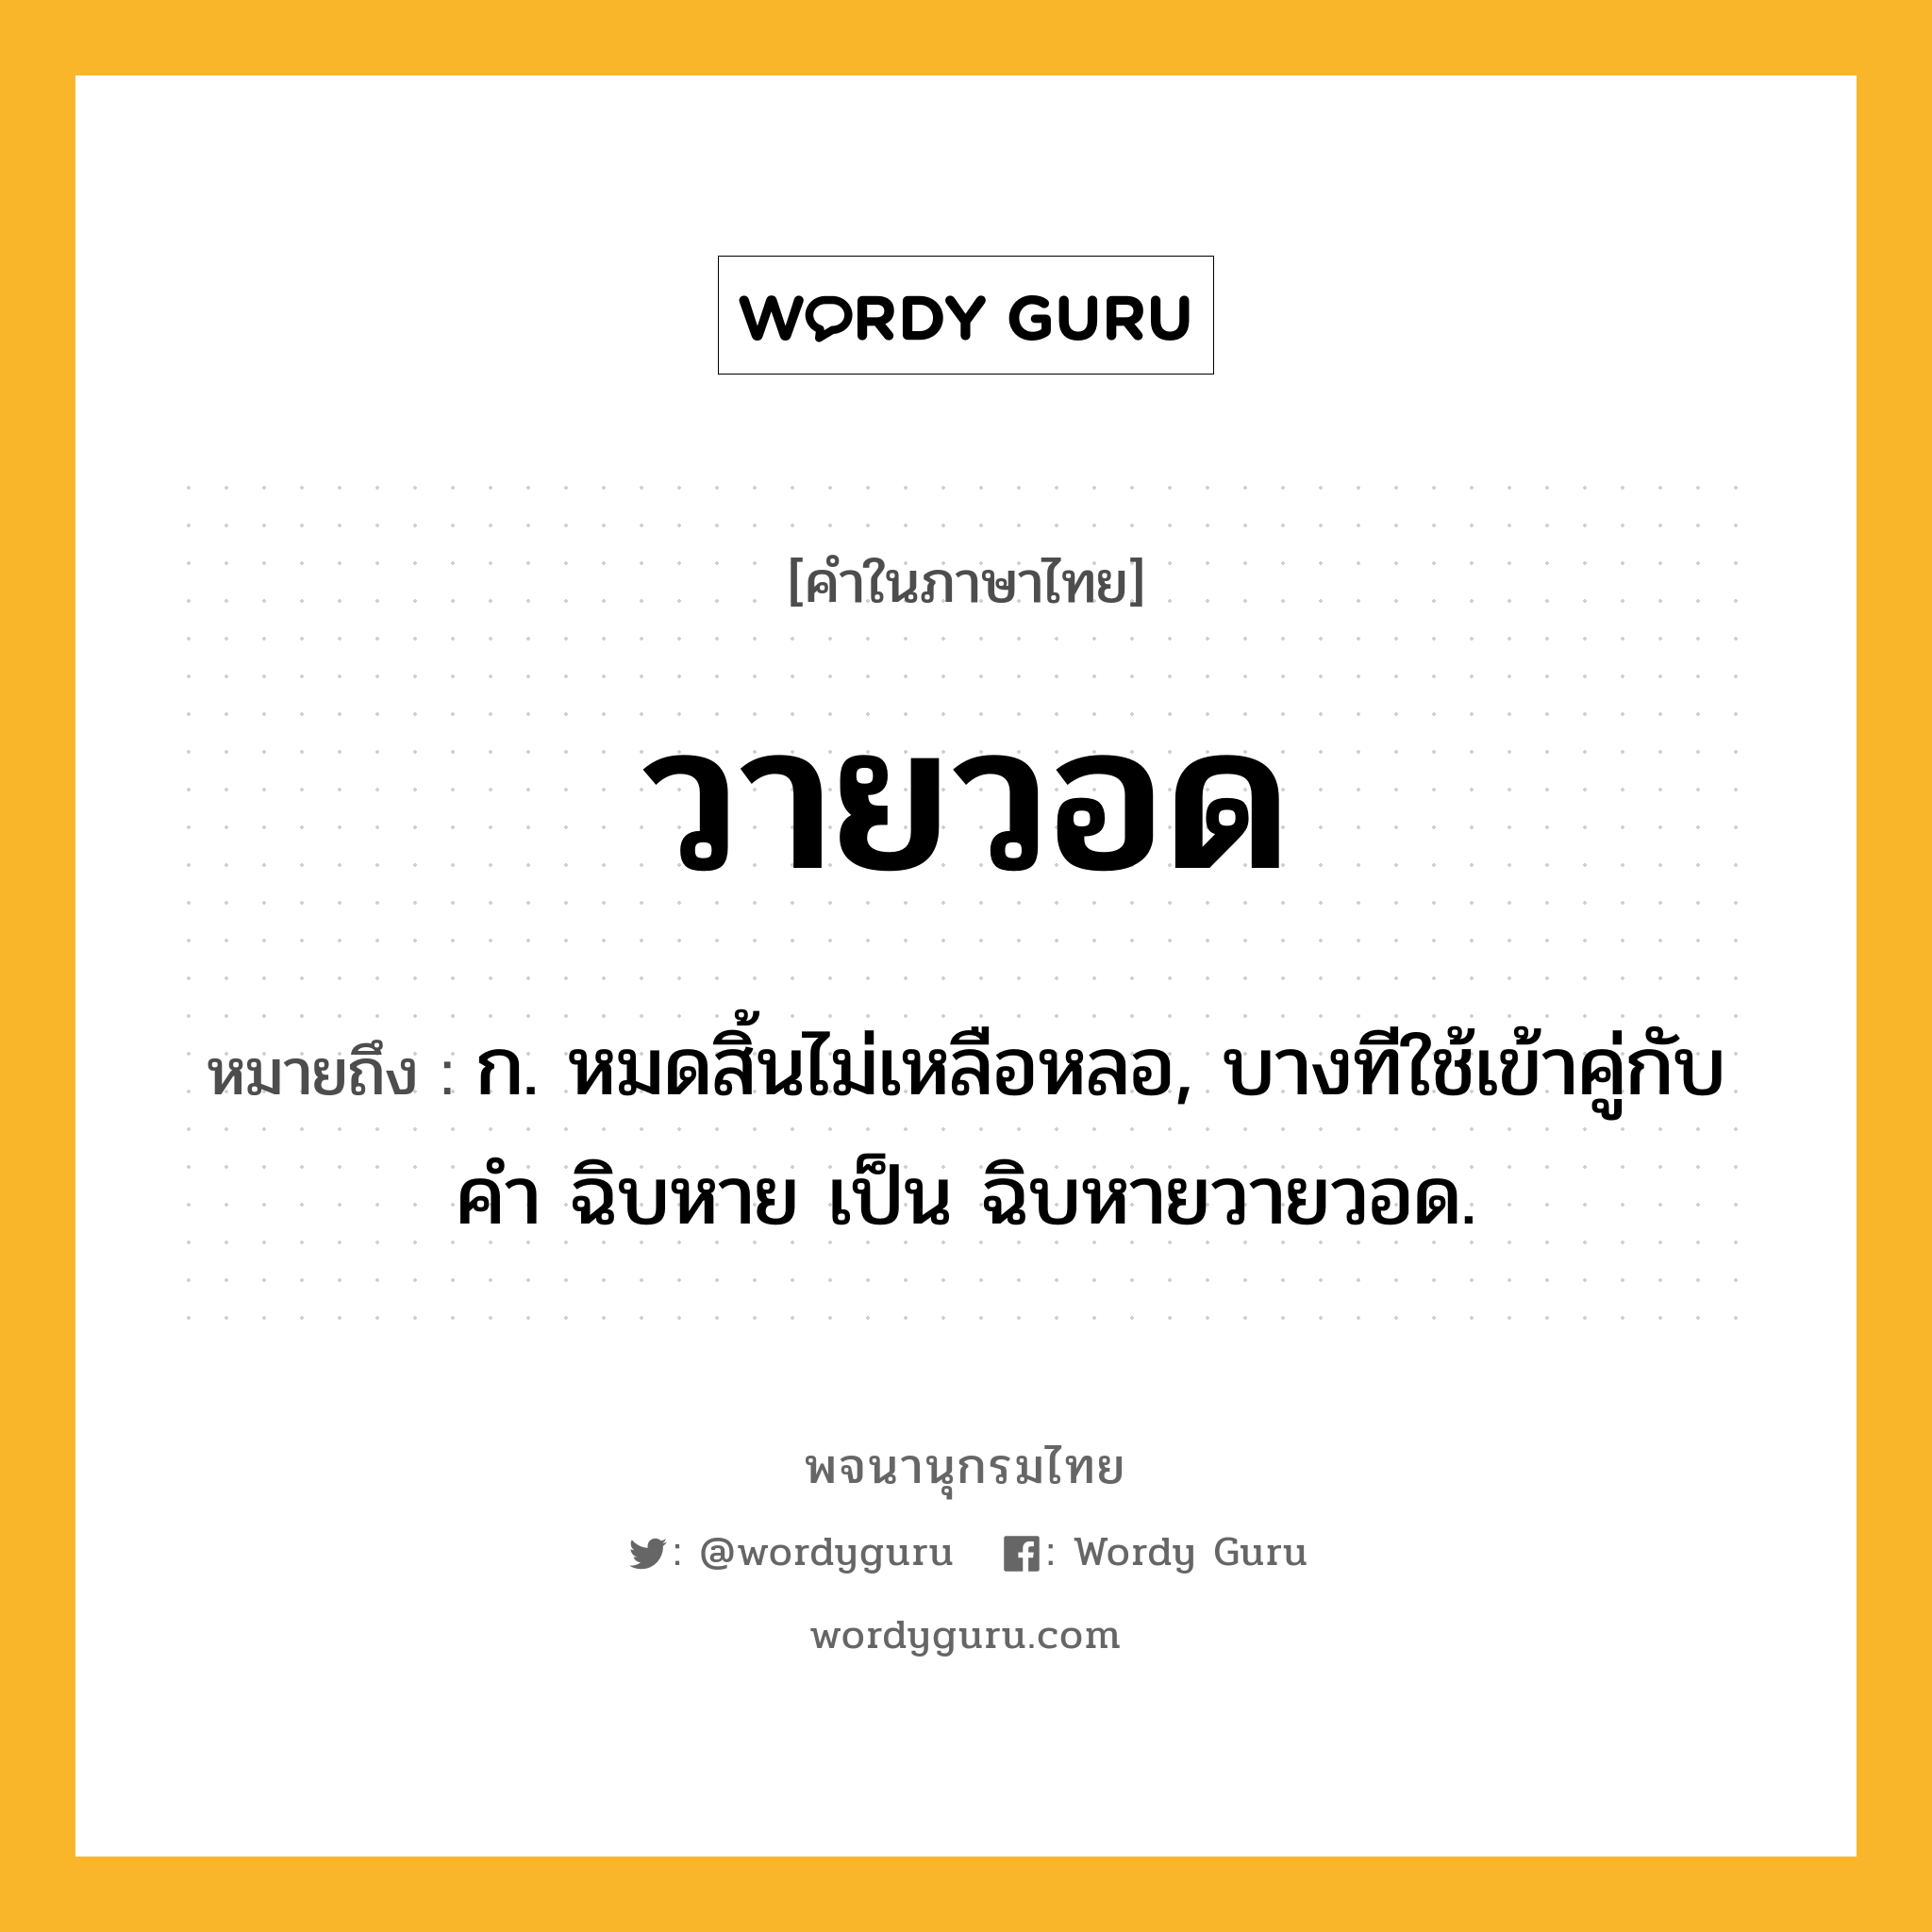 วายวอด หมายถึงอะไร?, คำในภาษาไทย วายวอด หมายถึง ก. หมดสิ้นไม่เหลือหลอ, บางทีใช้เข้าคู่กับคำ ฉิบหาย เป็น ฉิบหายวายวอด.